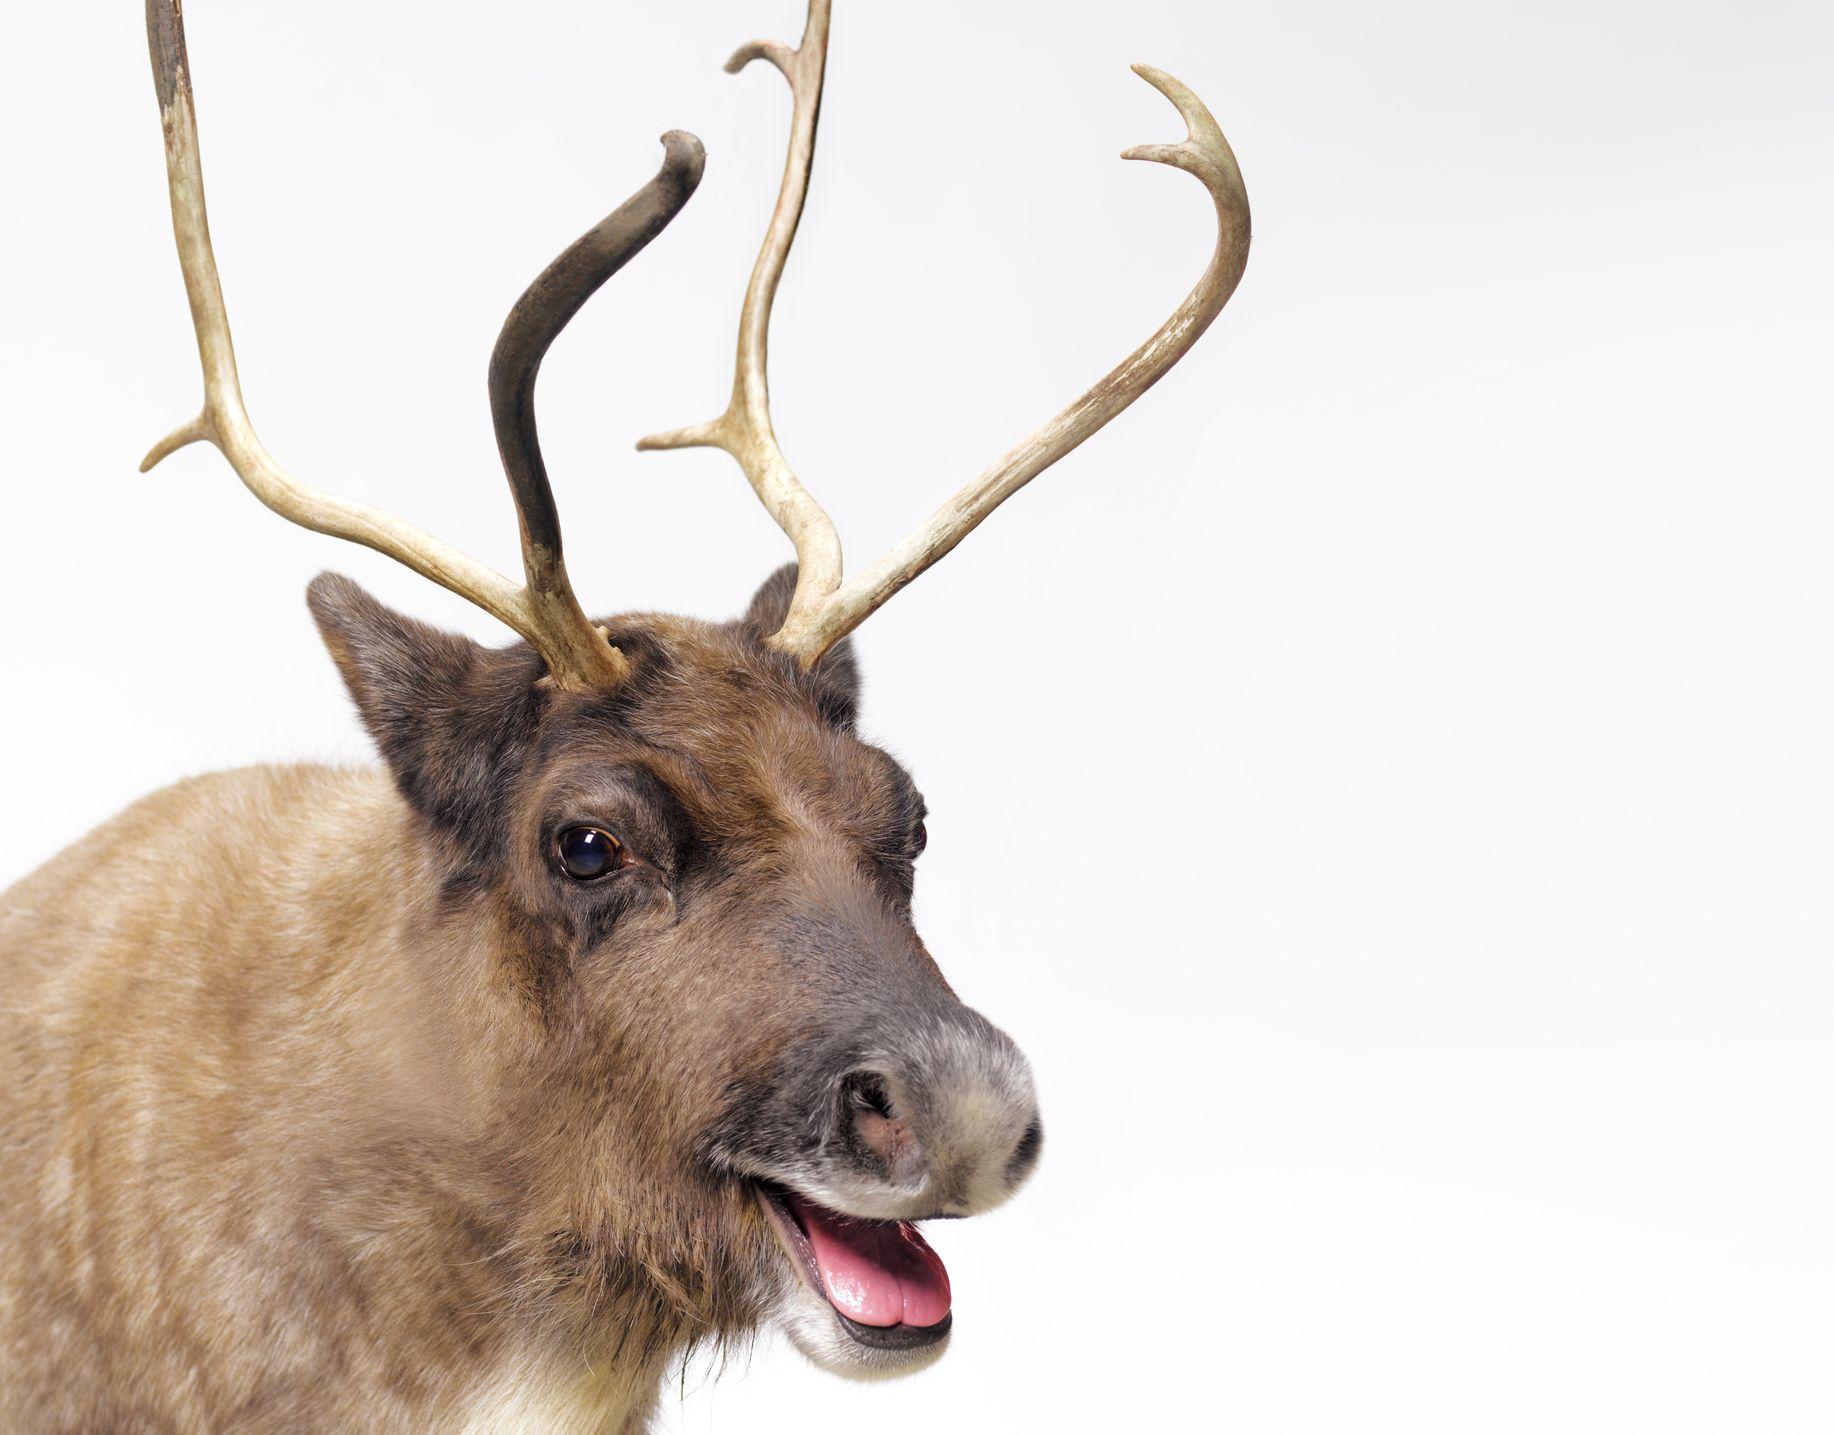 Donner, Donder, or Dunder? Santa's Reindeer's Name Explained